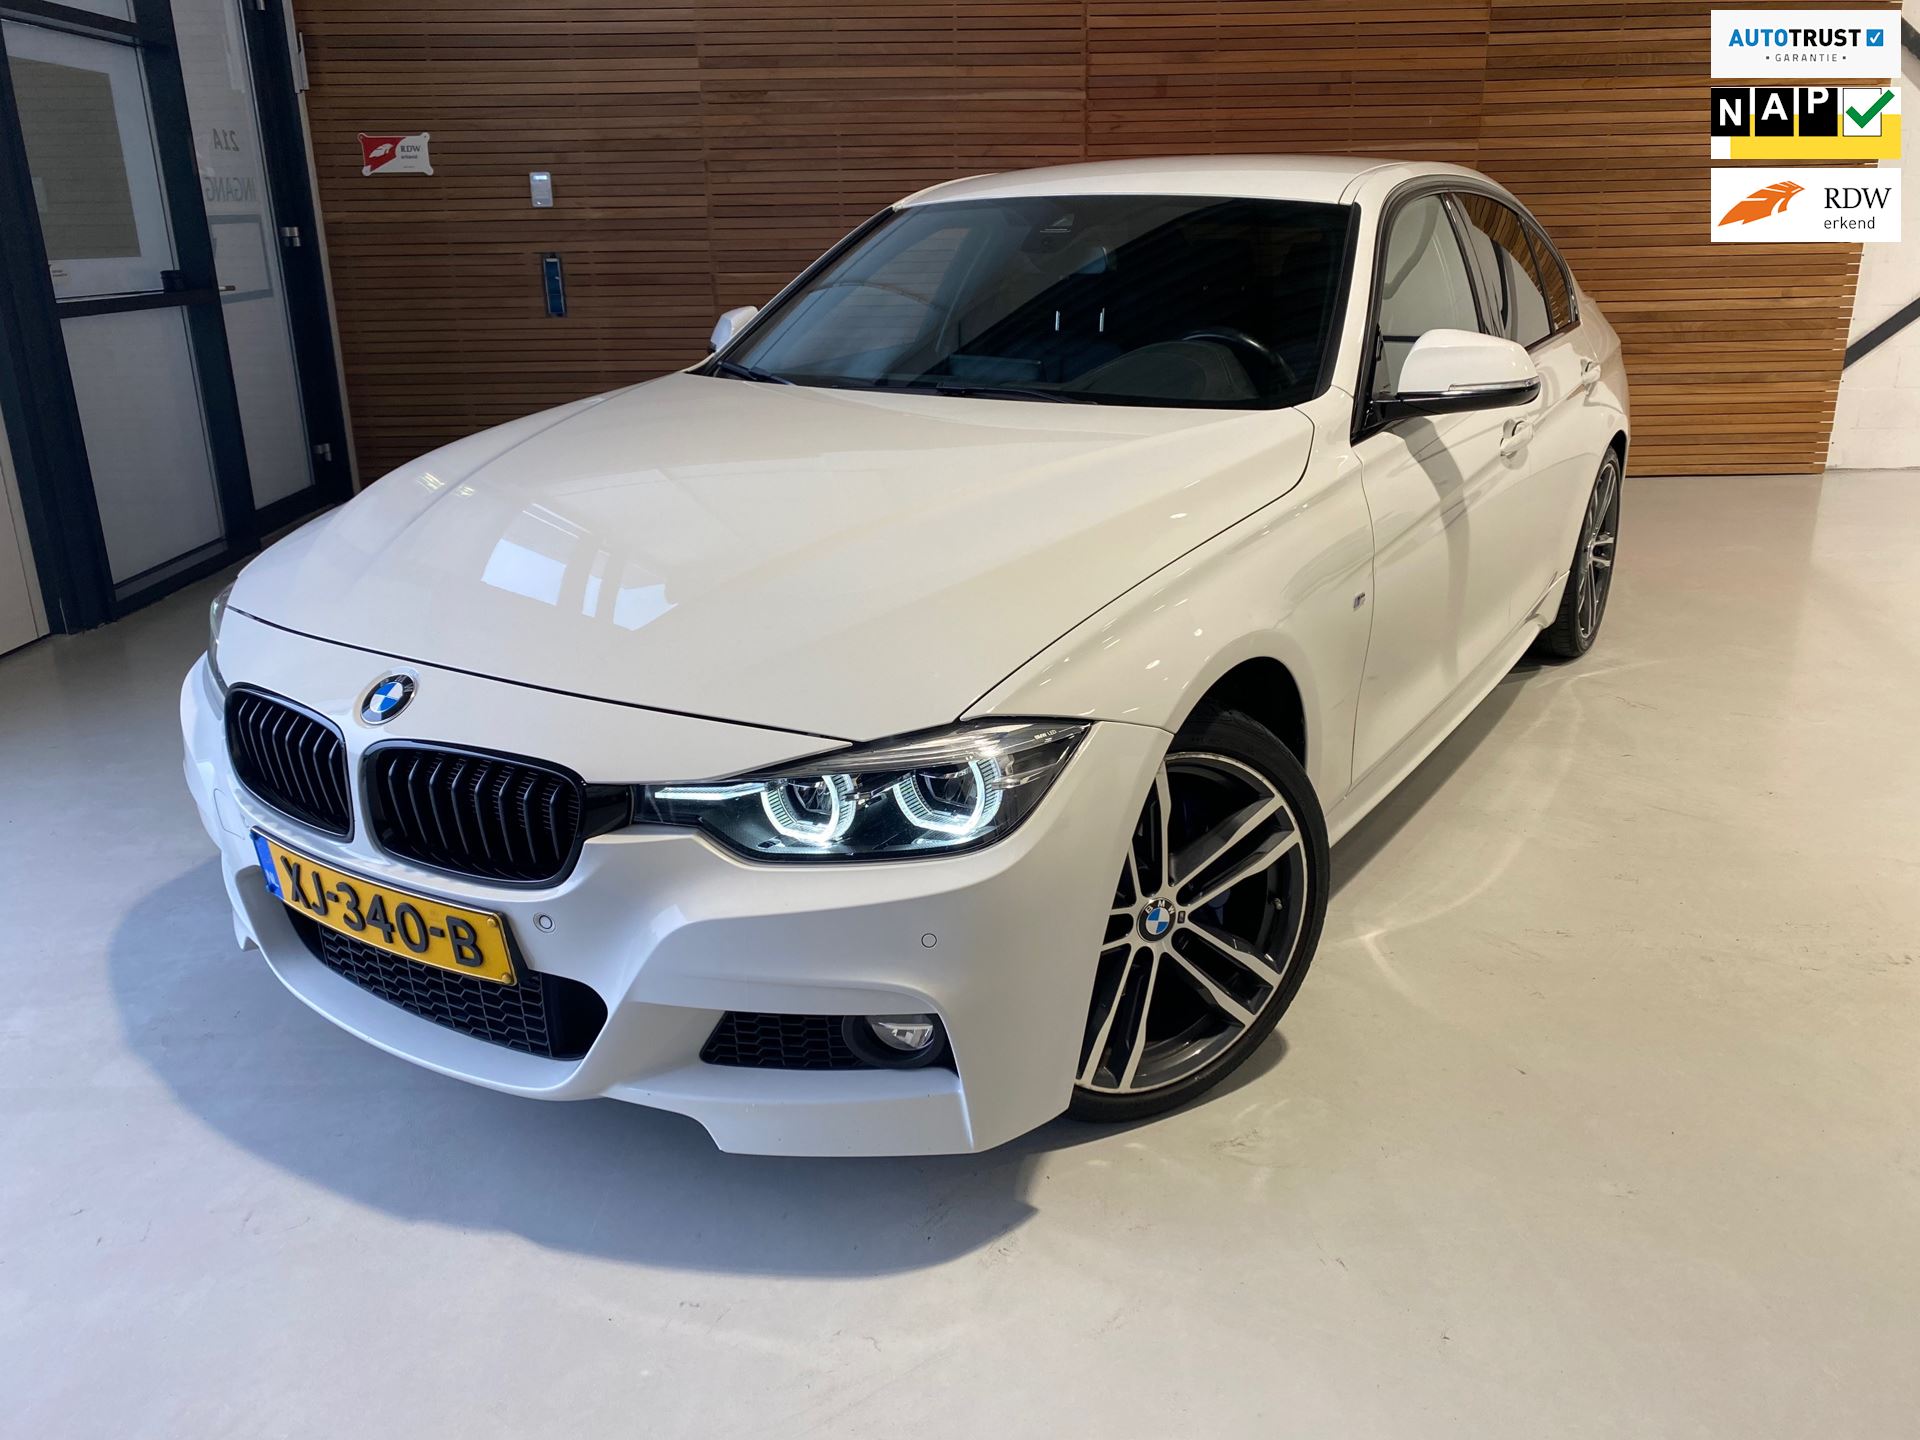 BMW 3-serie occasion - Occasion Point Gelderland